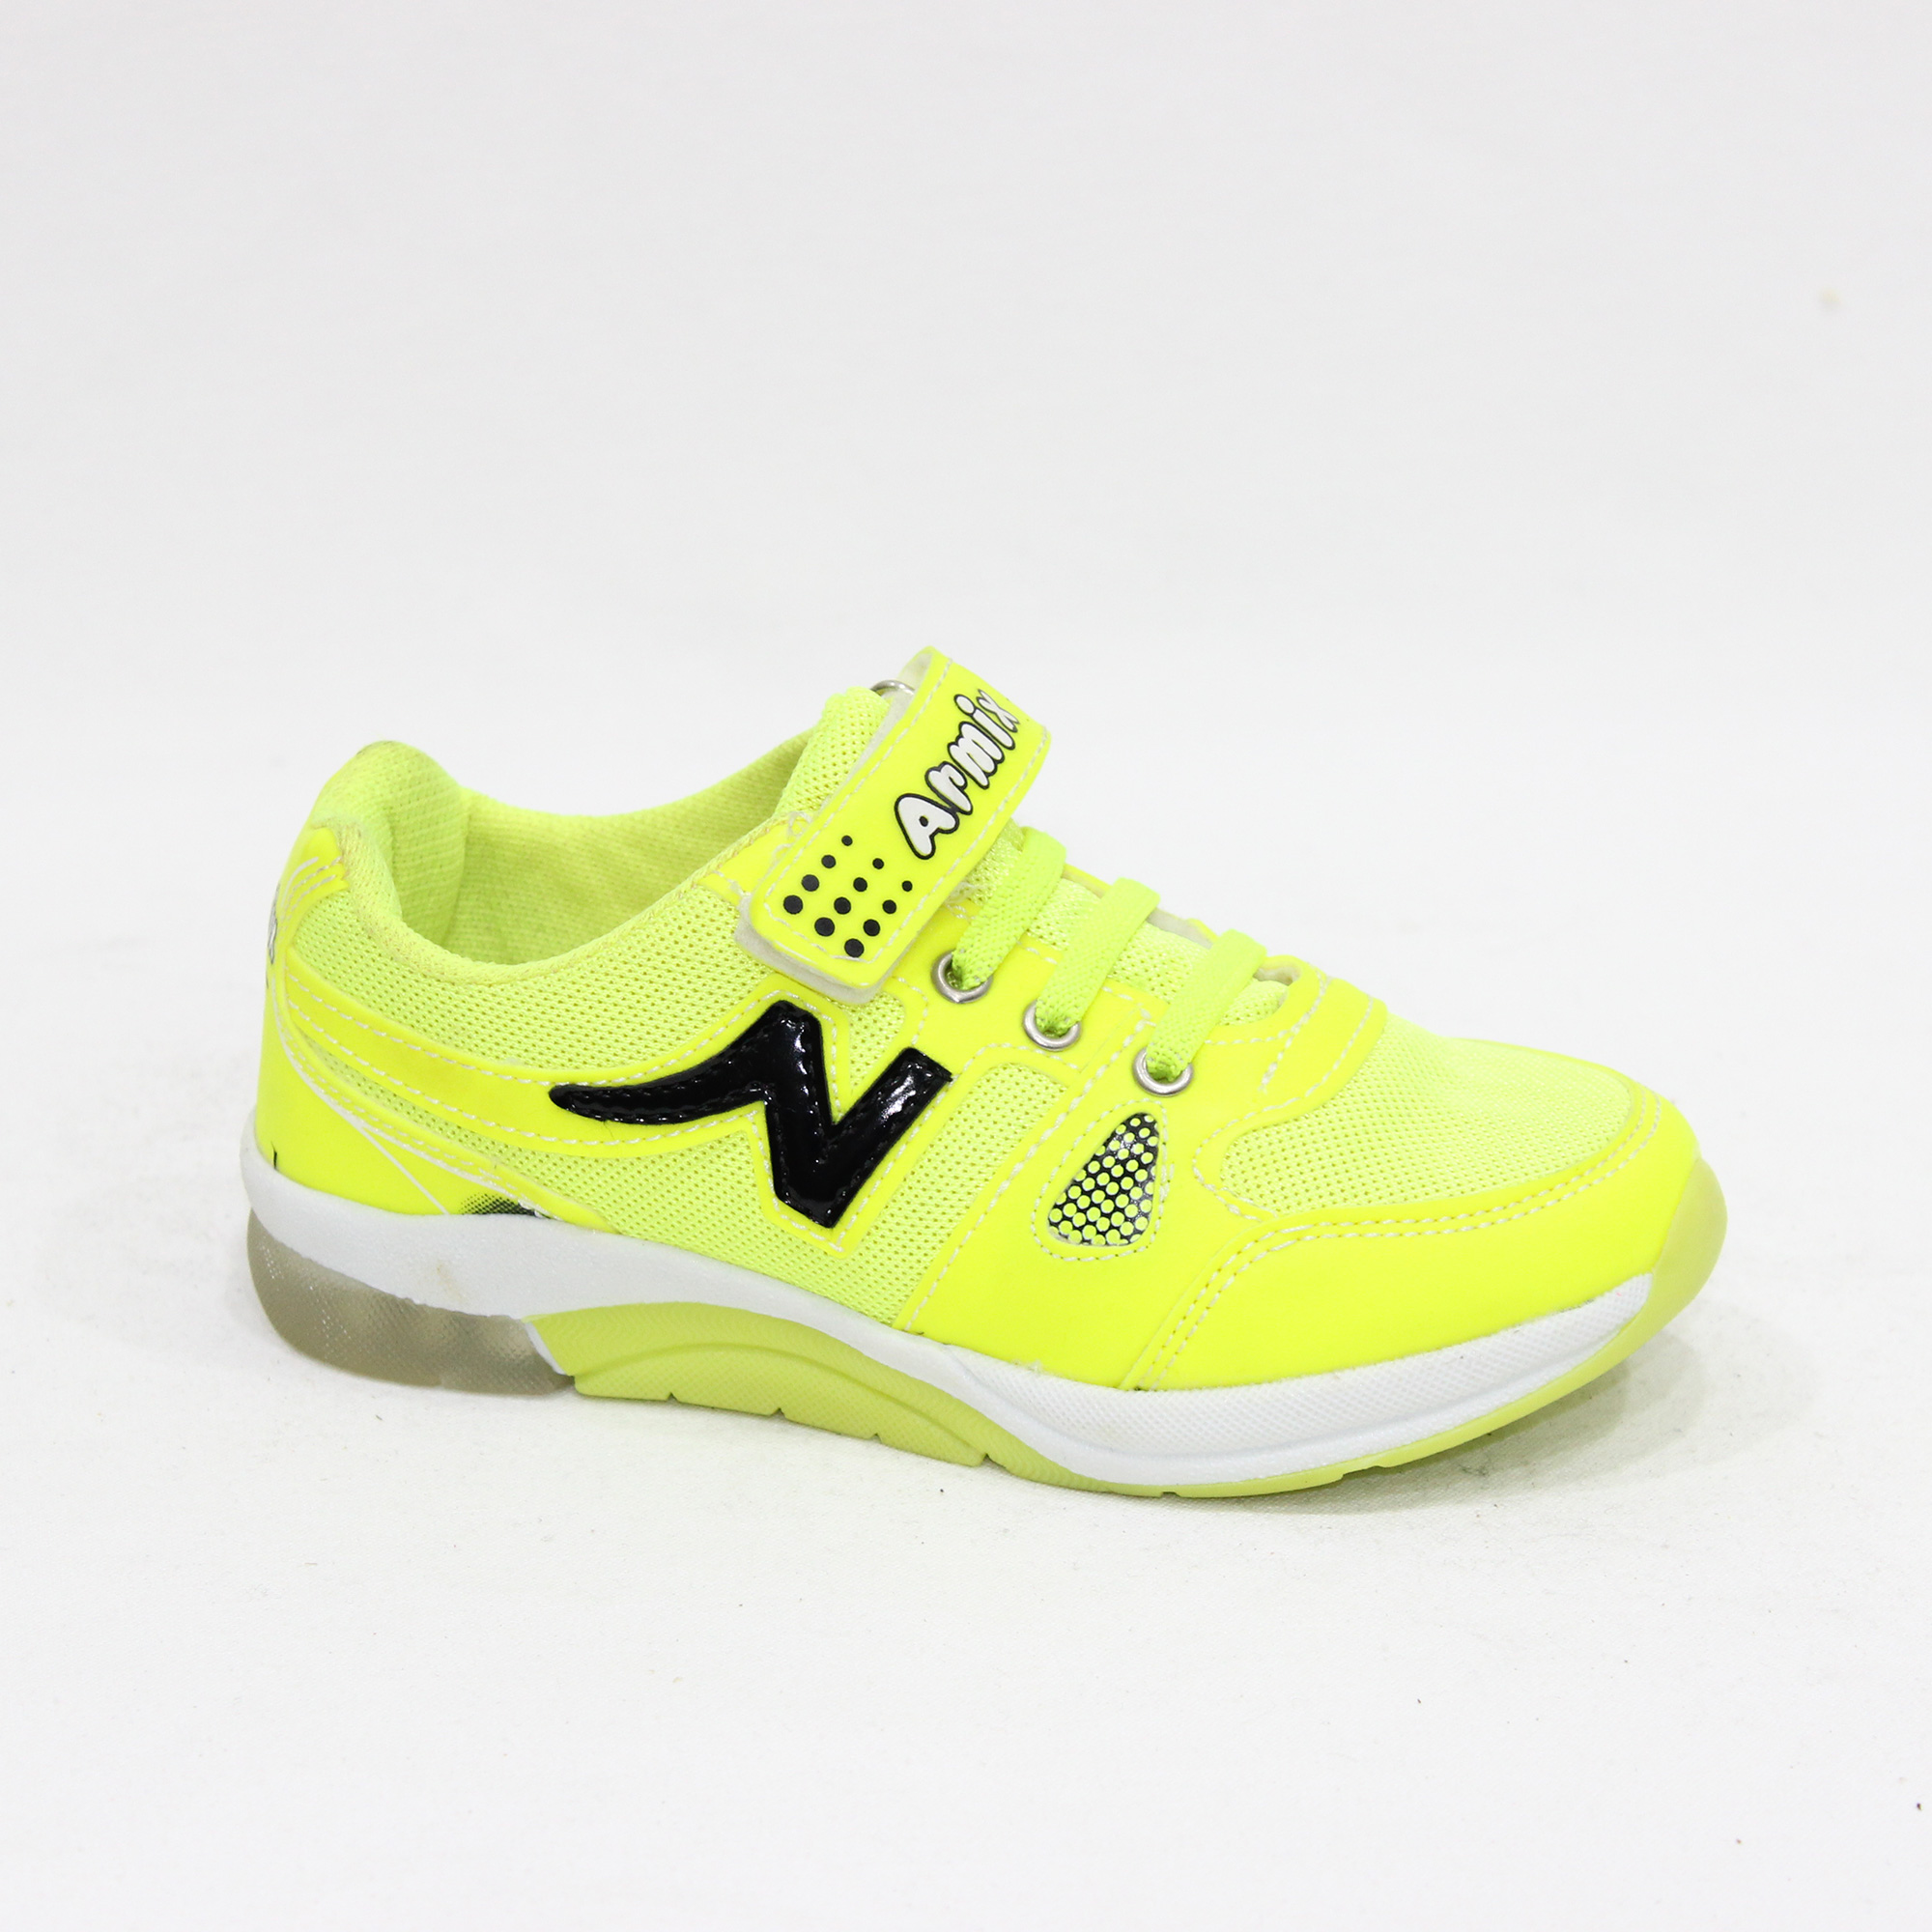 Armix Çocuk Neon Sarı Spor Ayakkabı